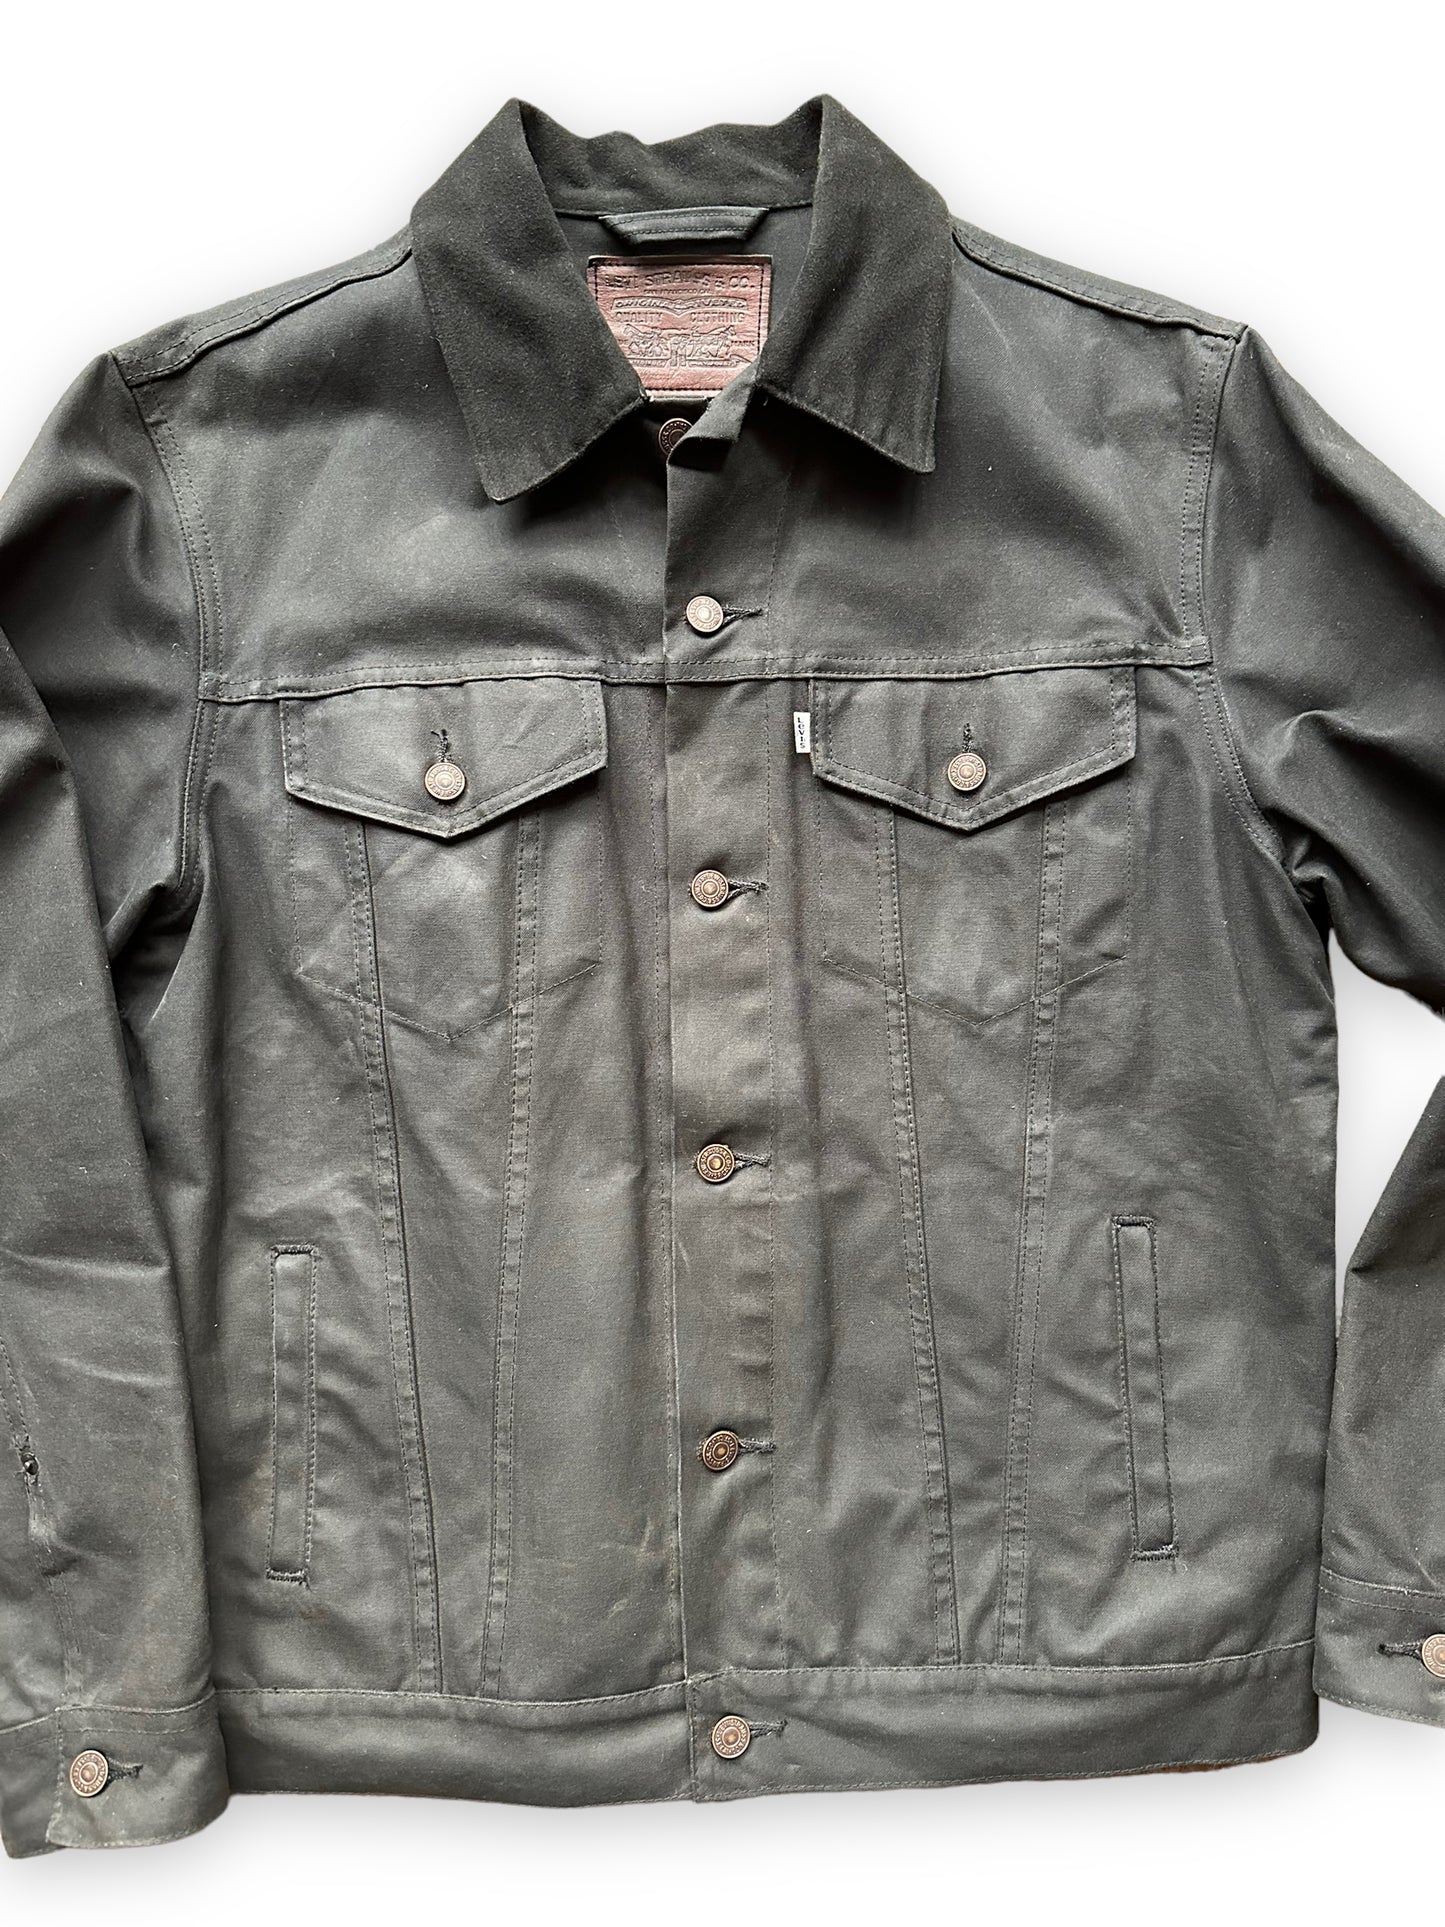 Front Detail on Black Levis X Filson Type III Trucker Jacket SZ XL |  Filson Levis Trucker Jacket | Vintage Workwear Seattle